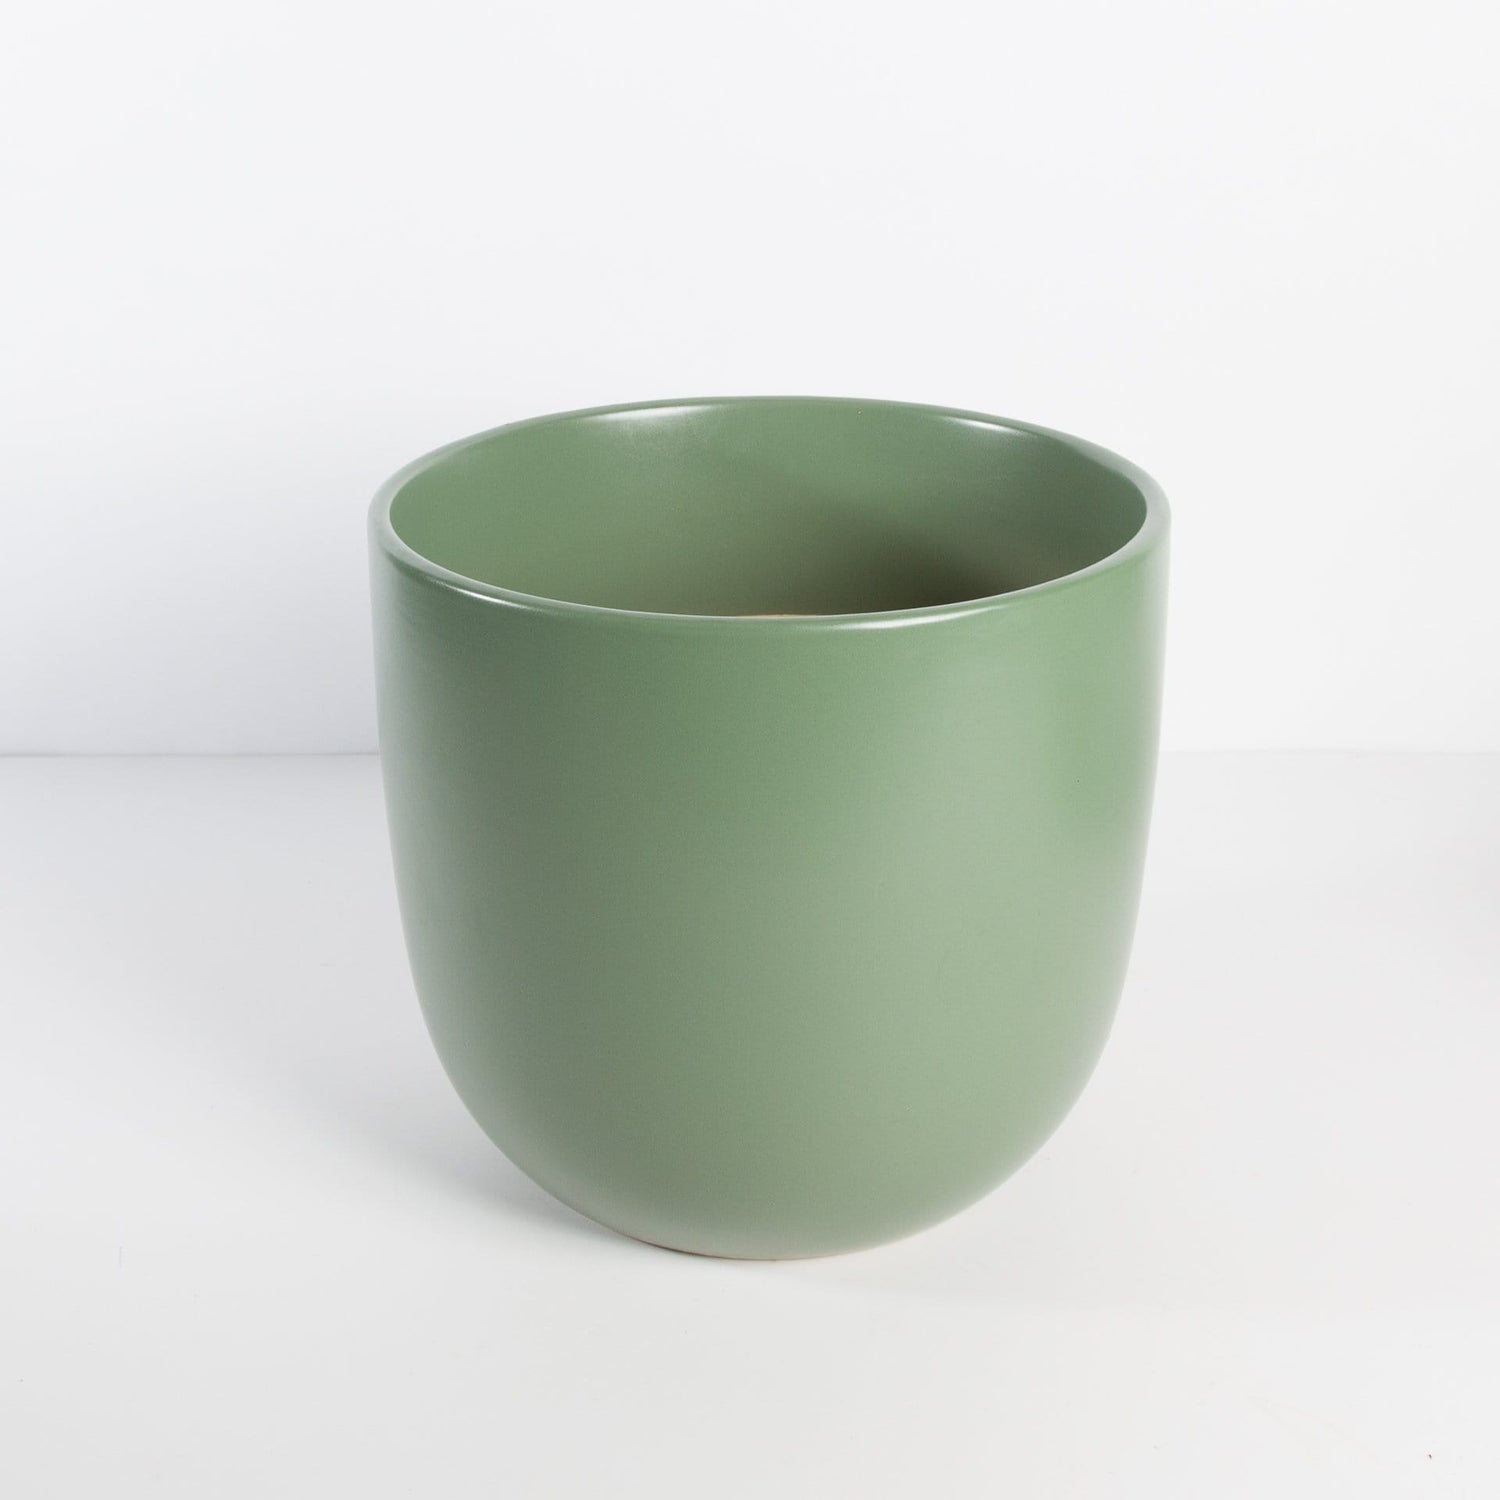 Peach & Pebble Pot 12" / green Curve Ceramic Pot